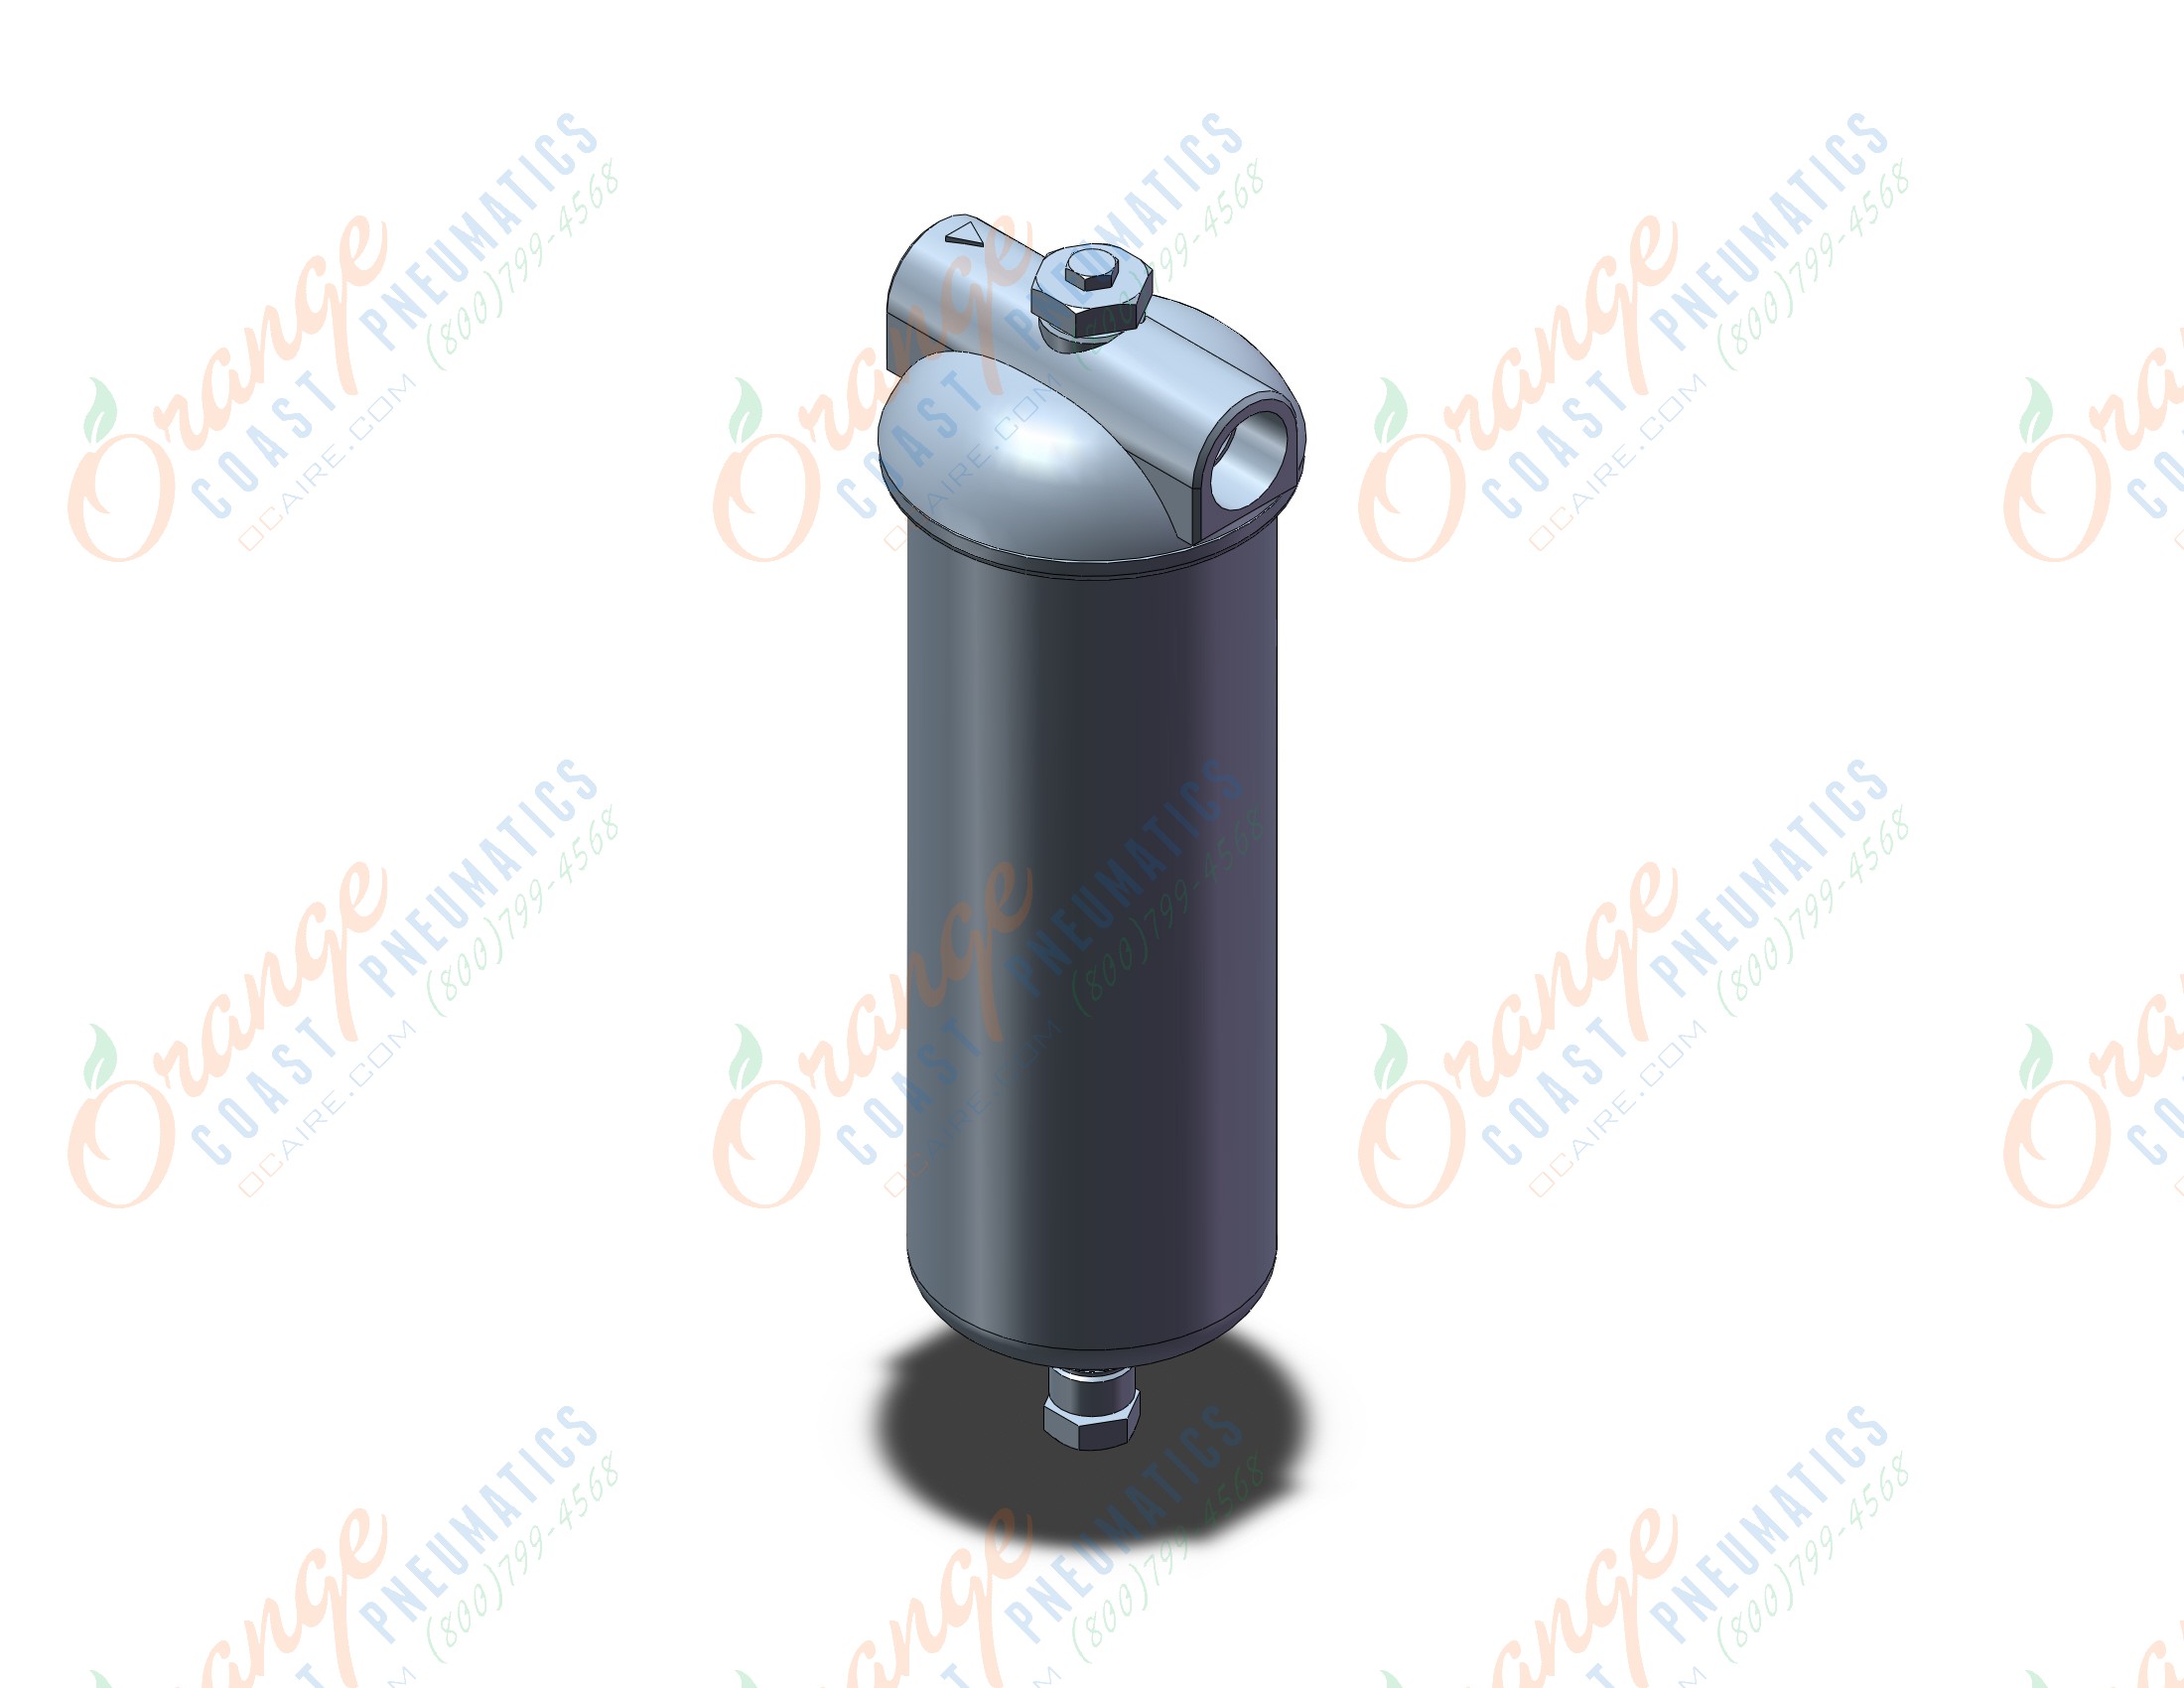 SMC FGDCA-06-T100 industrial filter, INDUSTRIAL FILTER